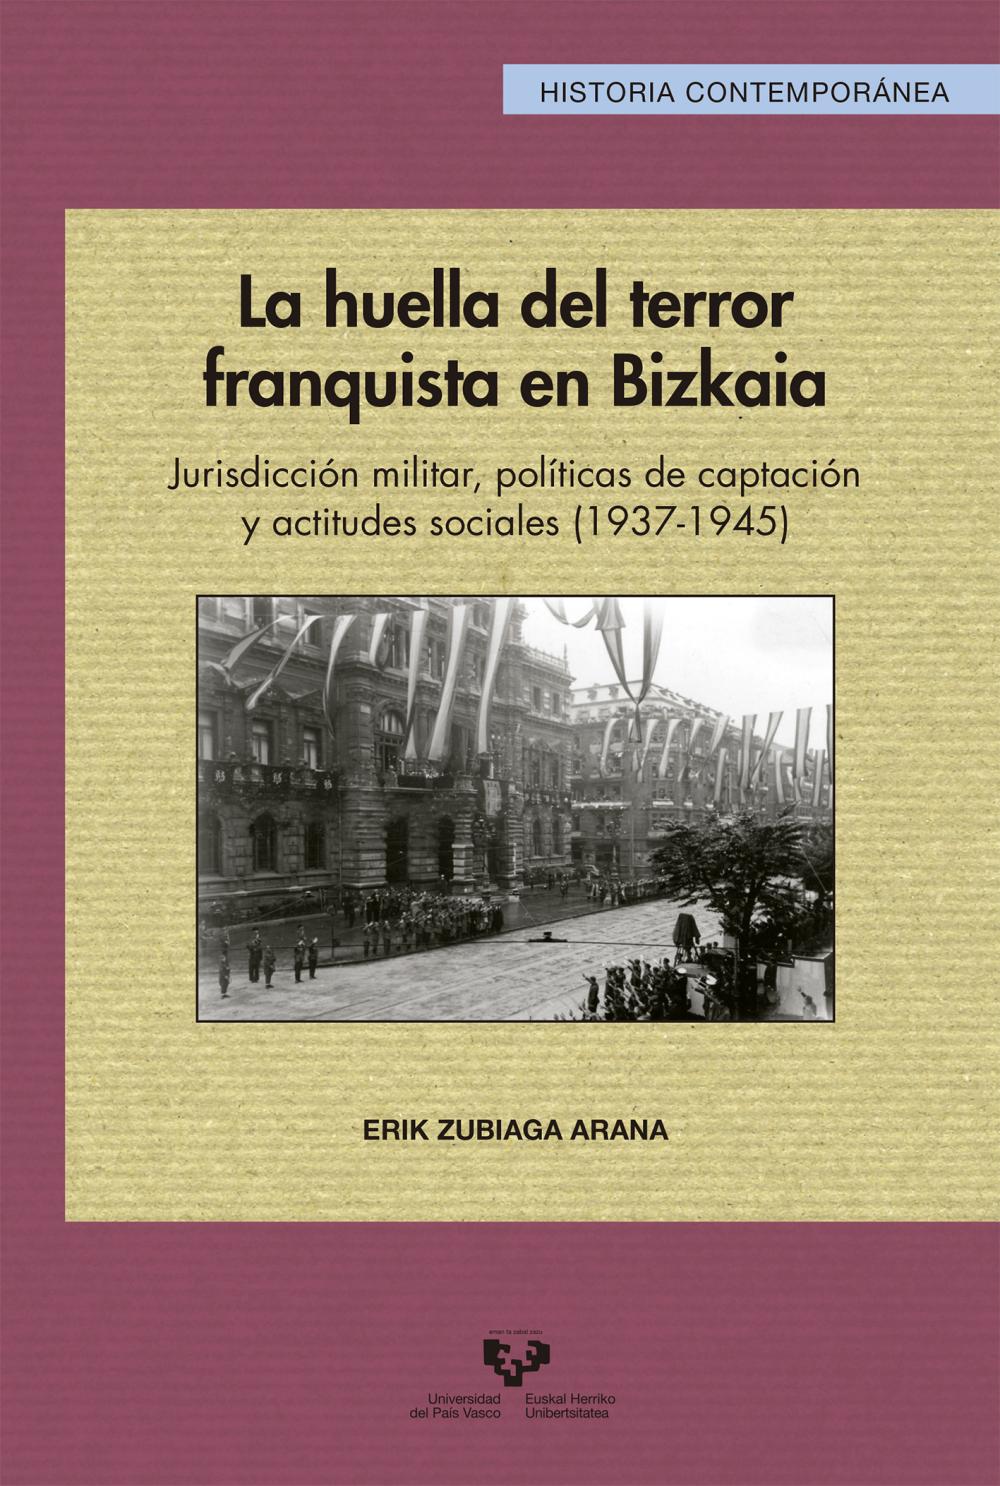 La huella del terror franquista en Bizkaia. Jurisdicción militar, políticas de captación y actitudes sociales (1937-1945)